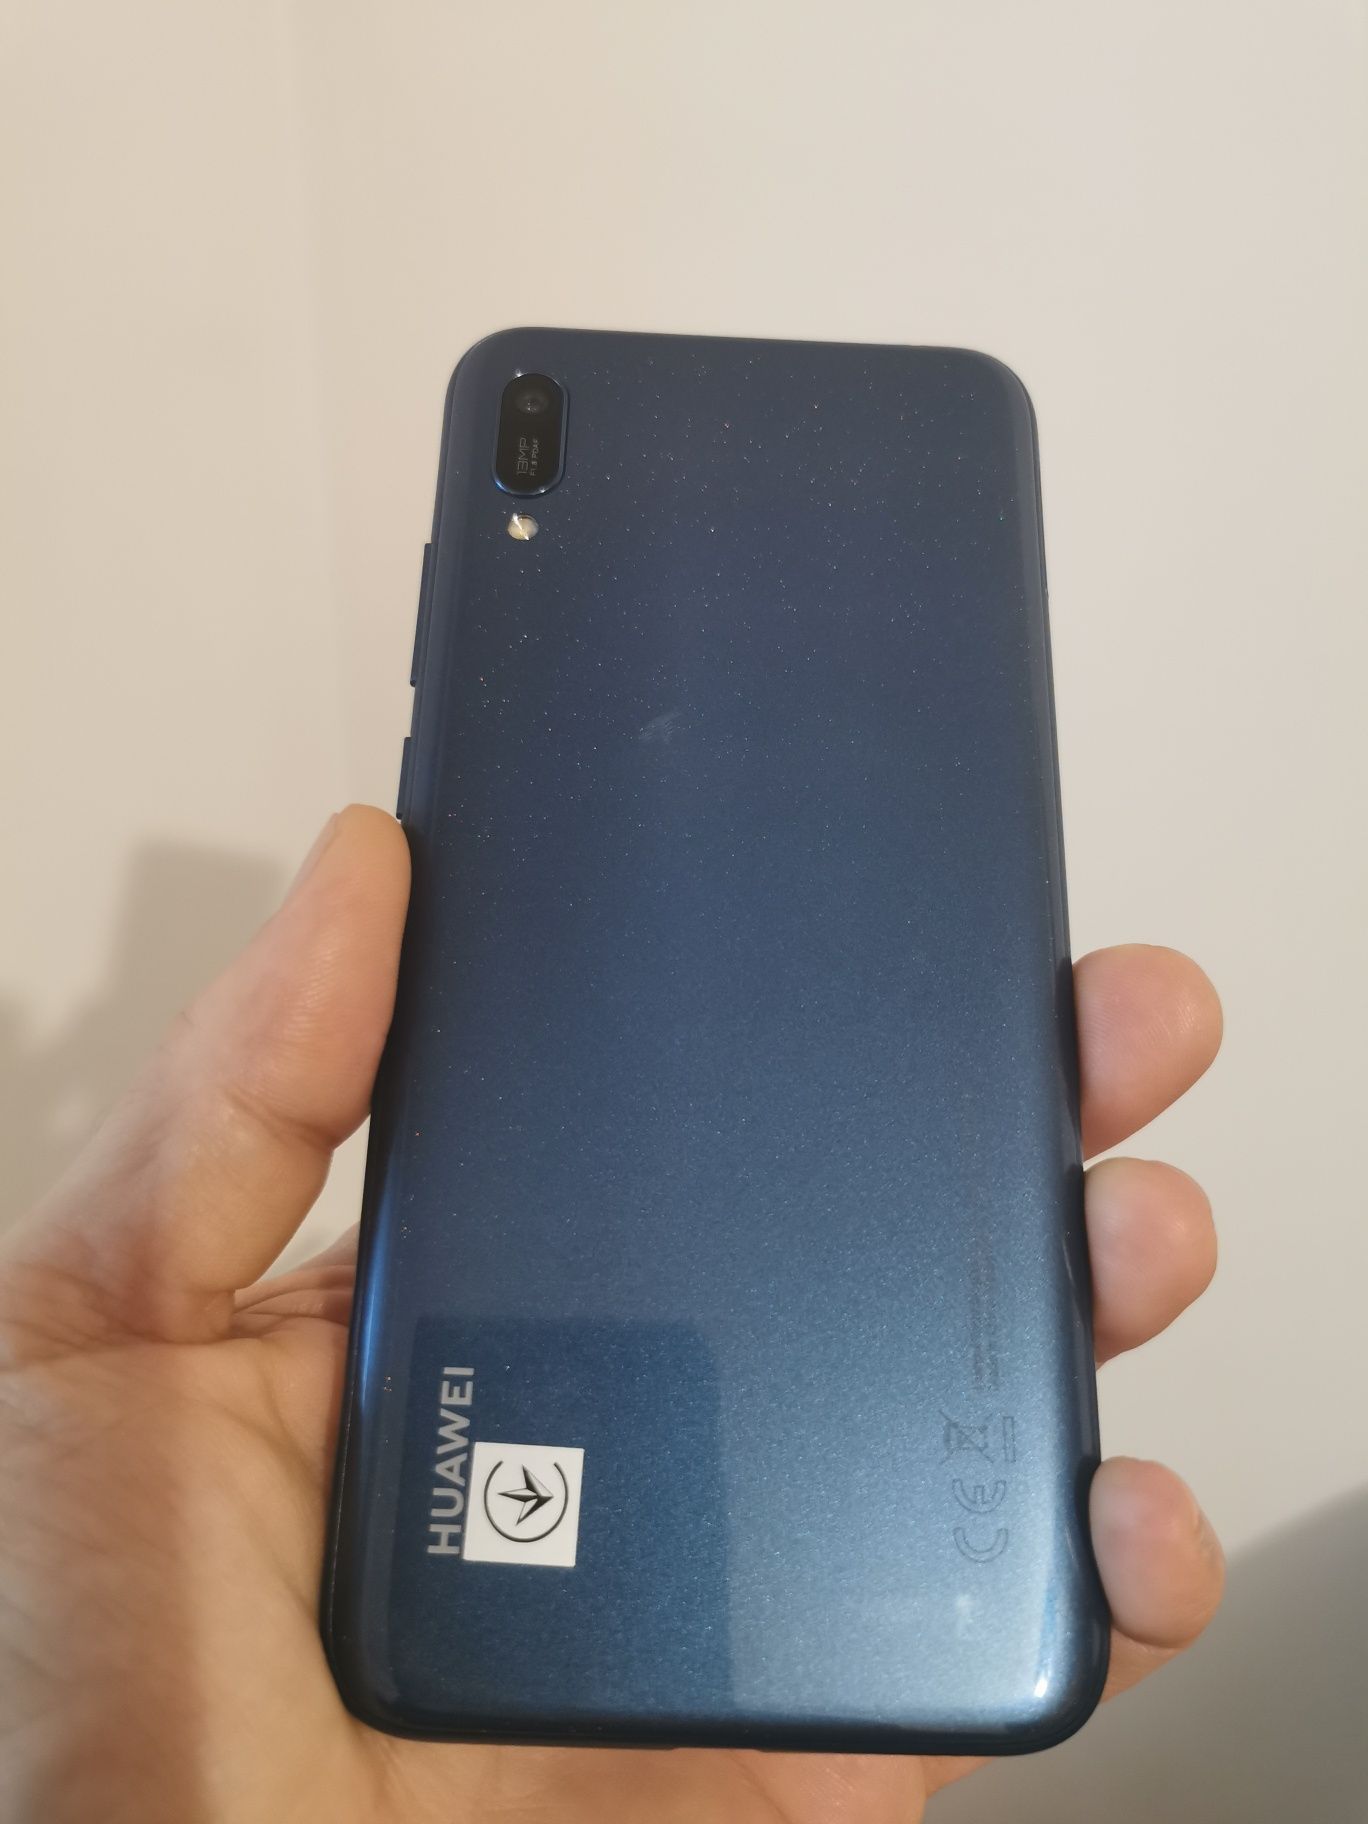 Huawei Y6 2019 32GB Dual SIM 4G 6 inch culoare Sapphire Blue, NOU